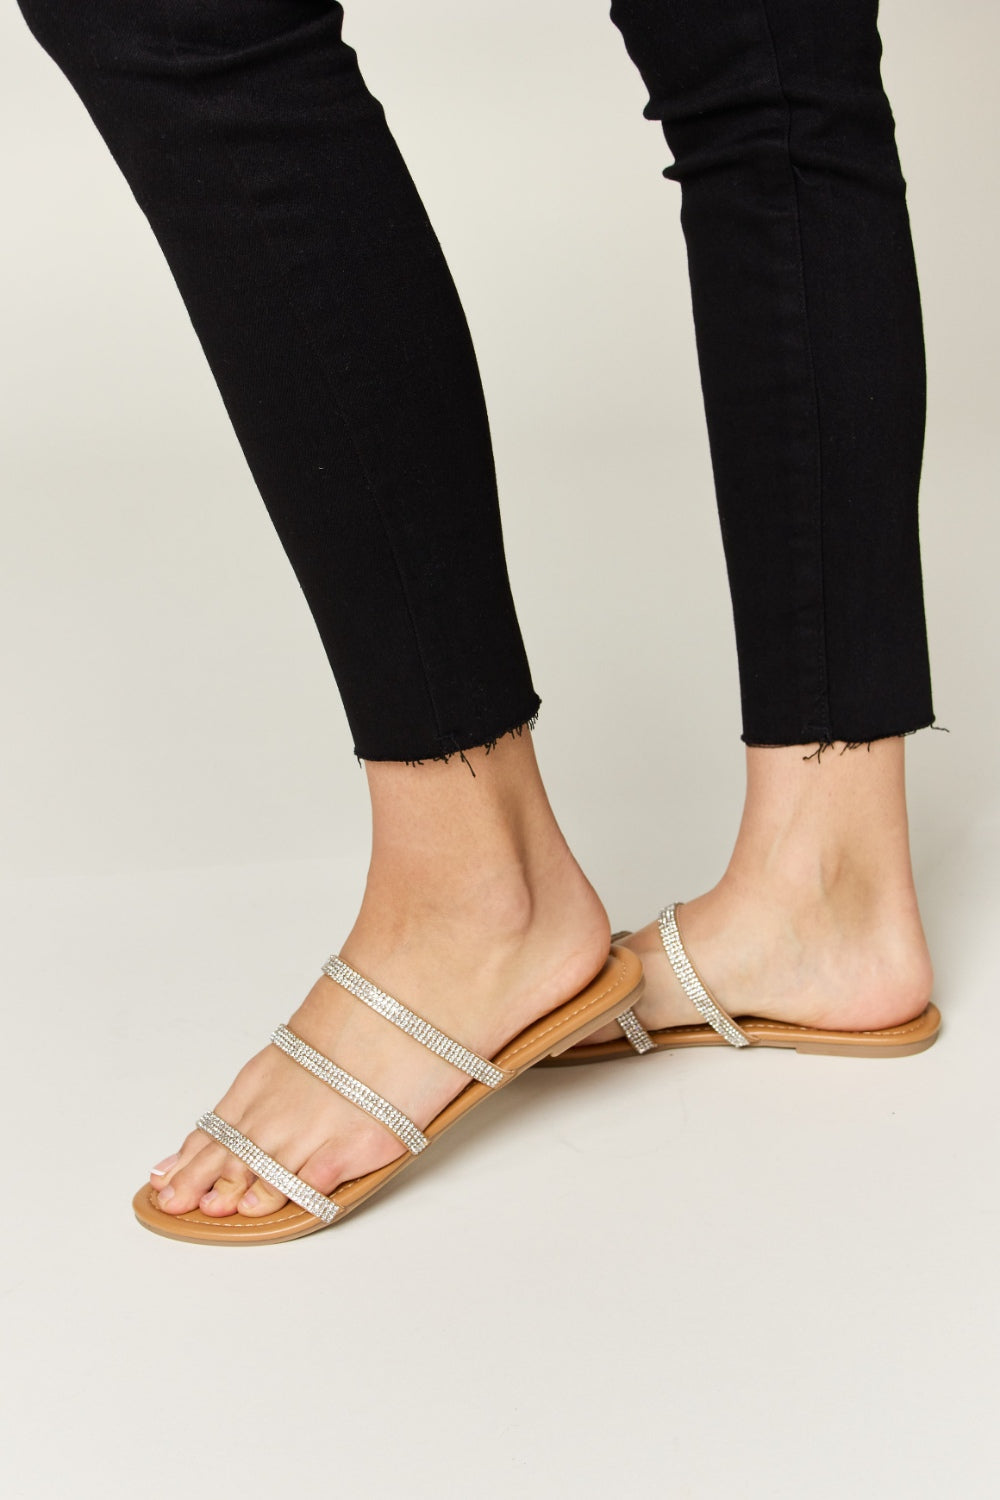 WILD DIVA Rhinestone Three-Strap Flat Sandals Trendsi